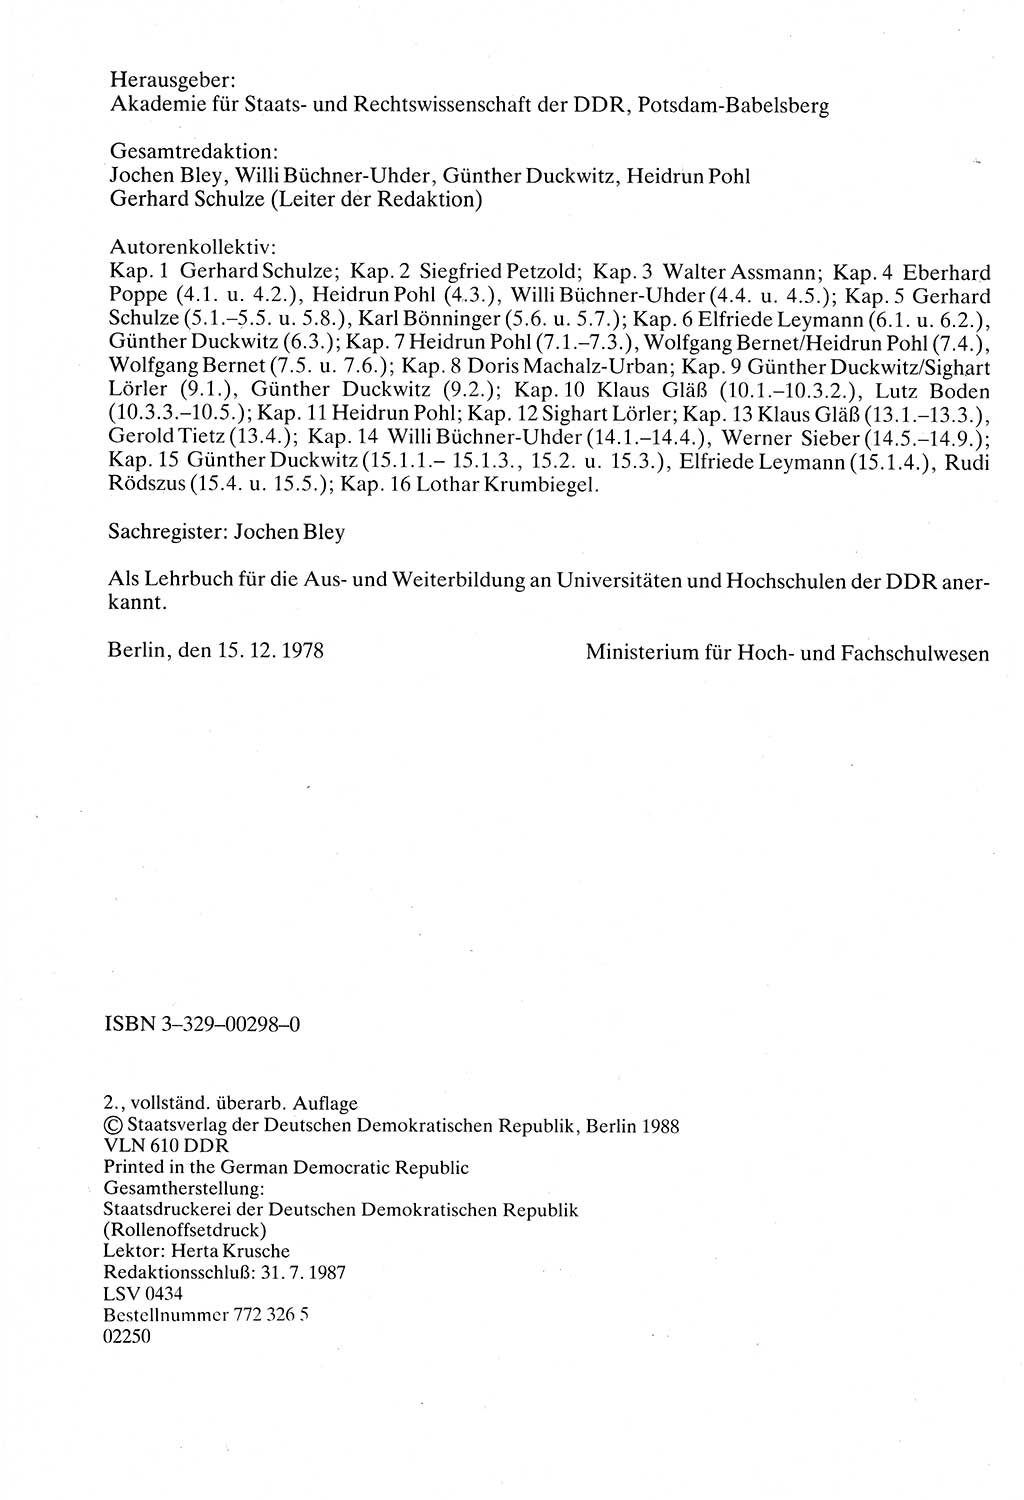 Verwaltungsrecht [Deutsche Demokratische Republik (DDR)], Lehrbuch 1988, Seite 4 (Verw.-R. DDR Lb. 1988, S. 4)